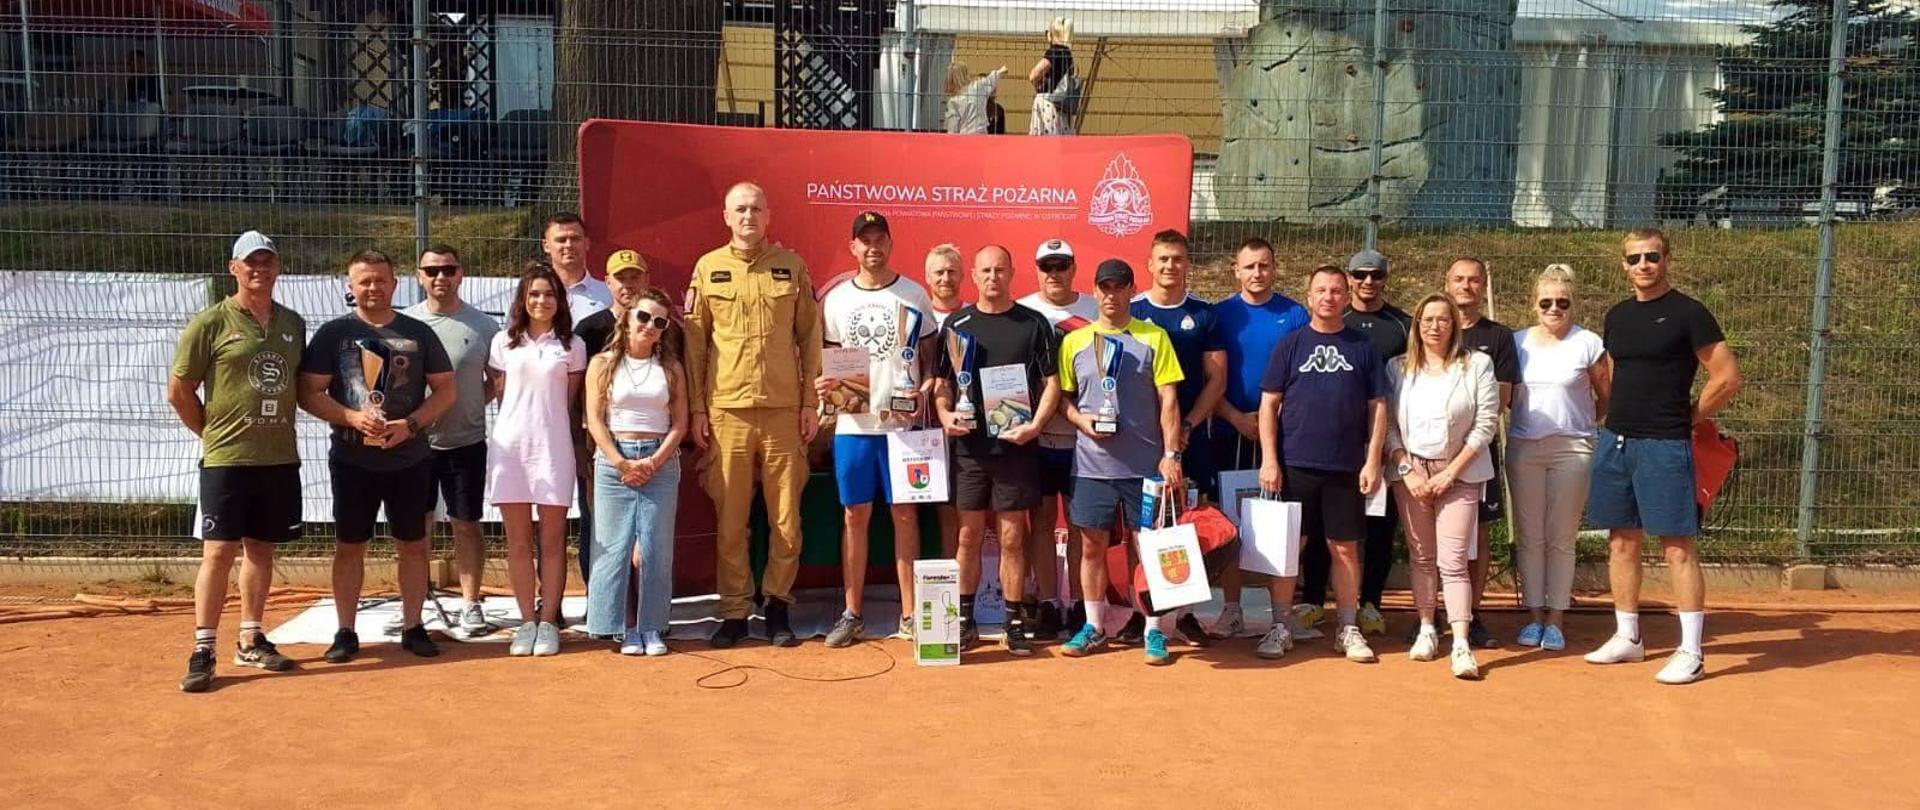 Zdjęcie zrobione na korcie tenisowym, pomarańczowa mączka. Na zdjęciu grupa zawodników z nagrodami oraz organizatorzy turnieju. Słonecznie.